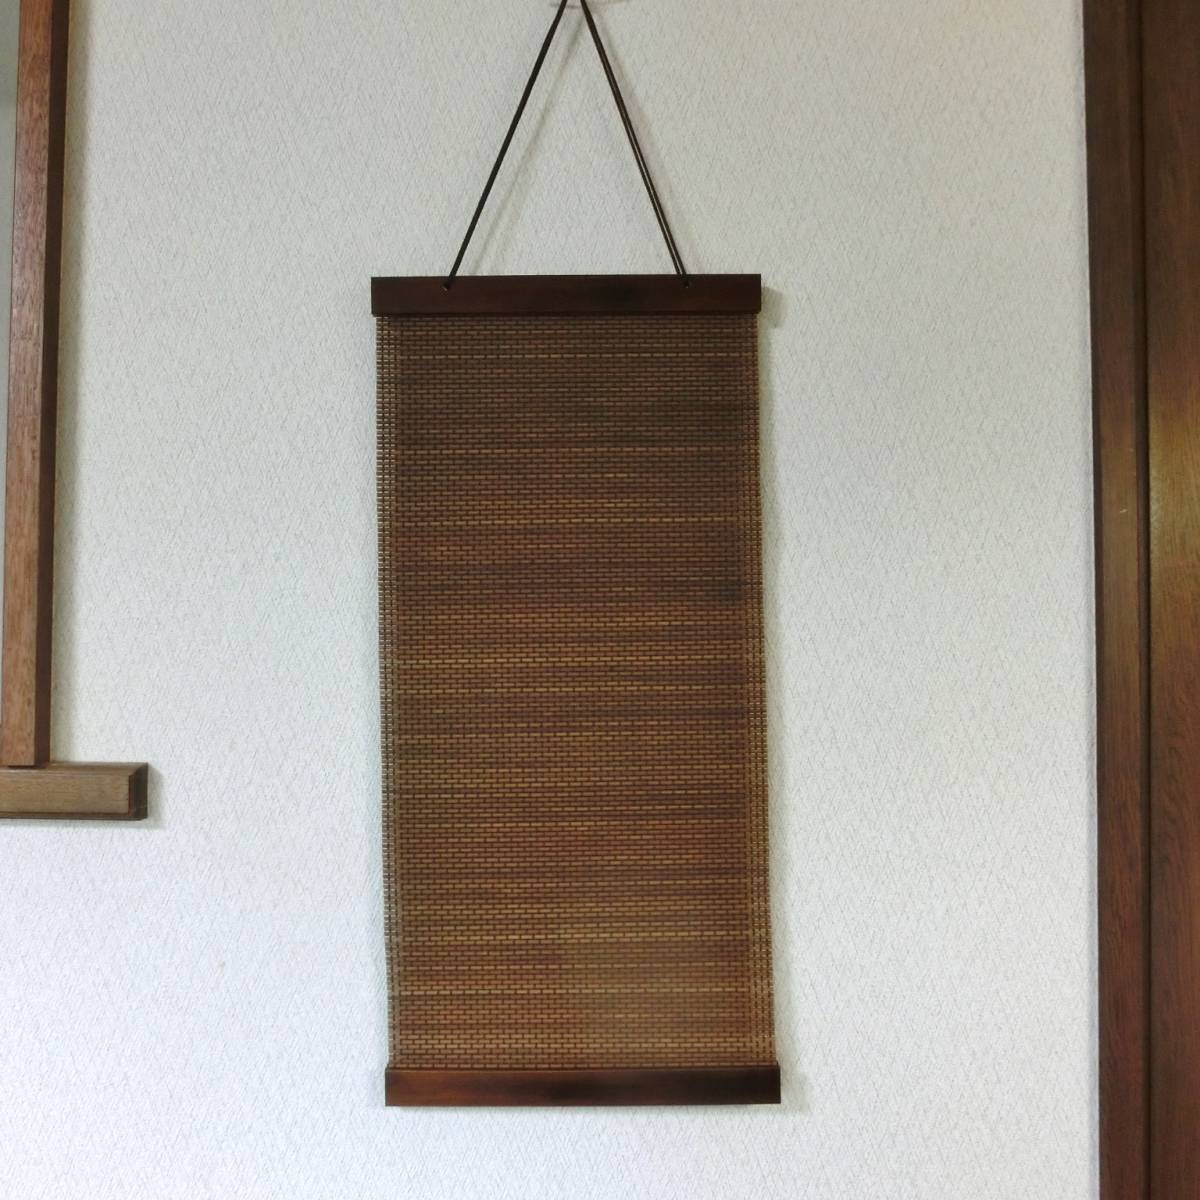 木制规格 竹子挂毯 全新未使用 时尚竹子日式挂毯 17 宽度 25.5 厘米 长度 54 厘米, 手工制品, 内部的, 杂货, 控制板, 挂毯